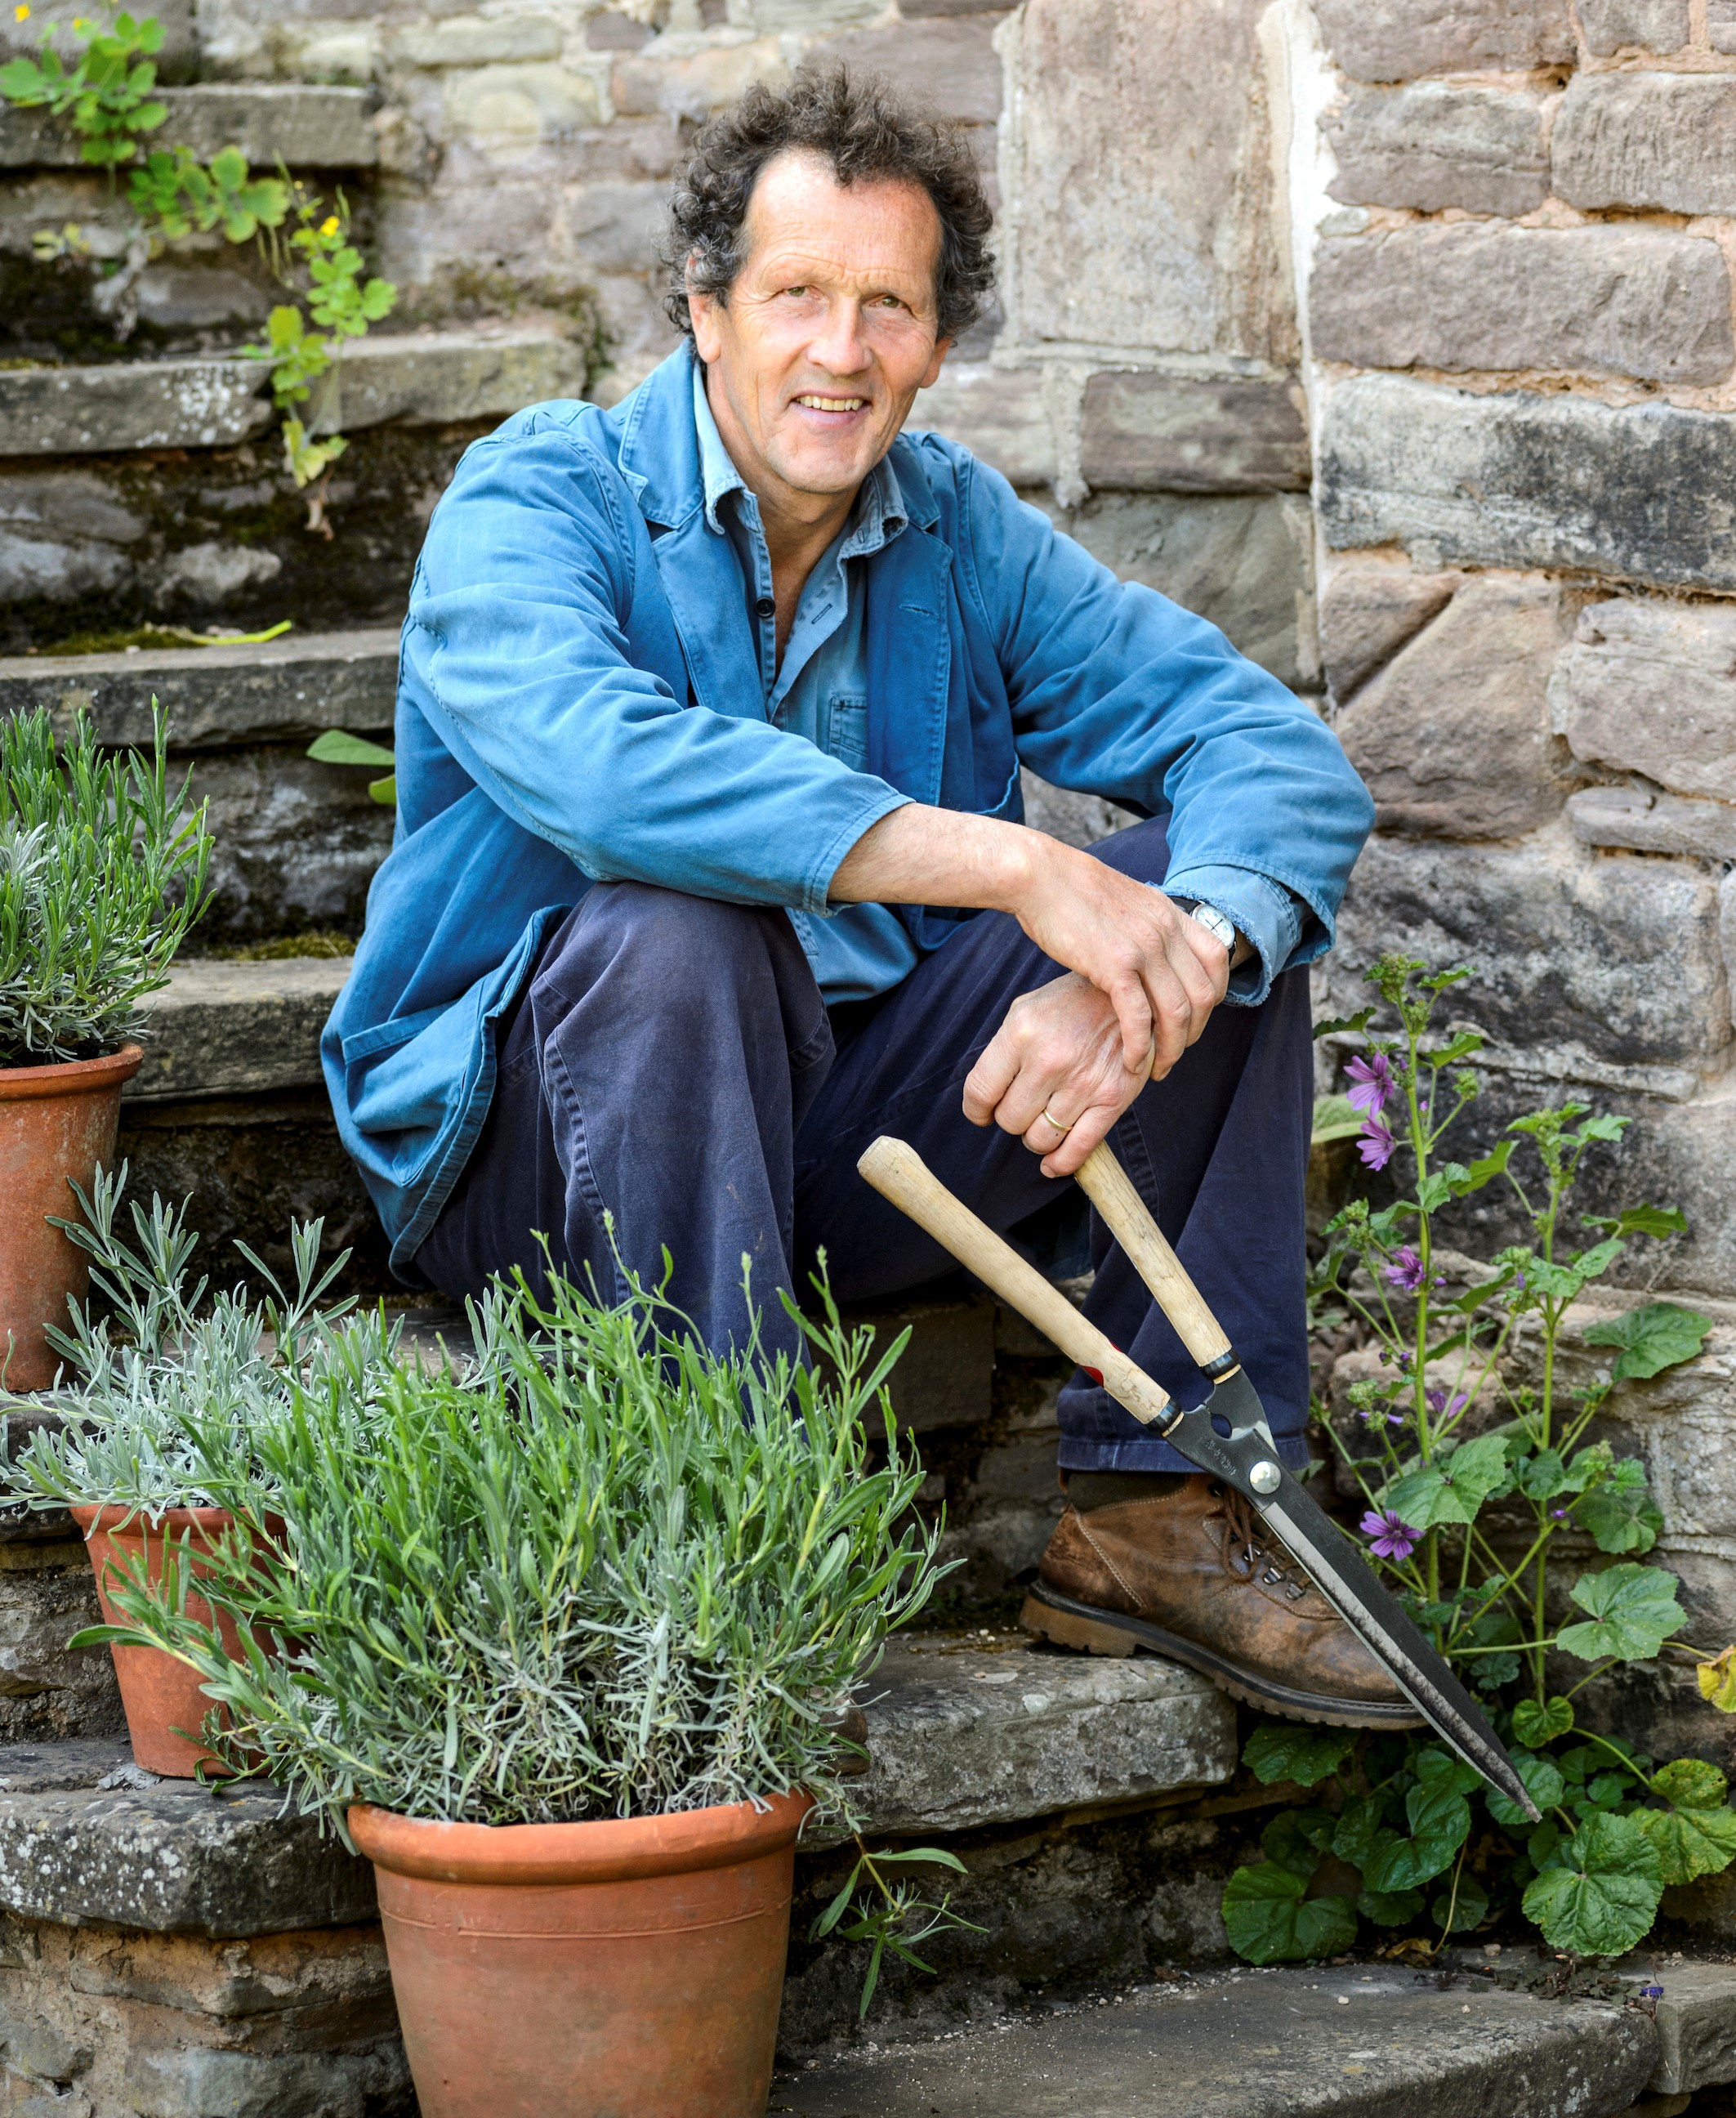 Gentle gardening helped Monty recover from a stroke. (Jason Ingram/DK/PA)